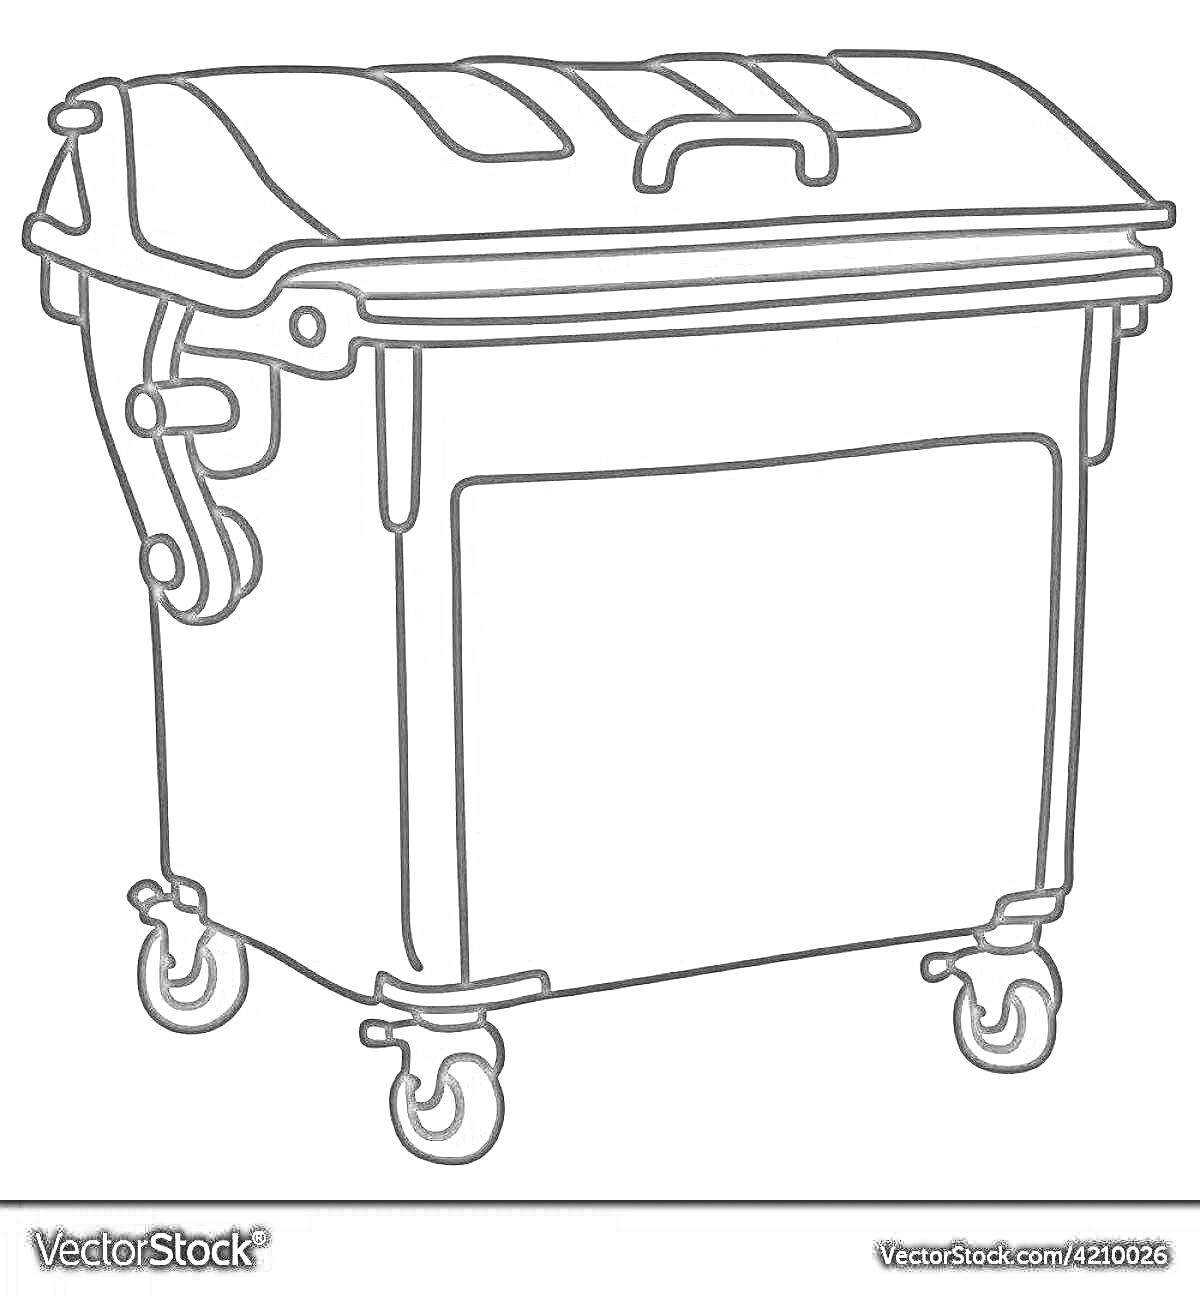 Раскраска Мусорный бак на колесиках с крышкой и боковыми ручками